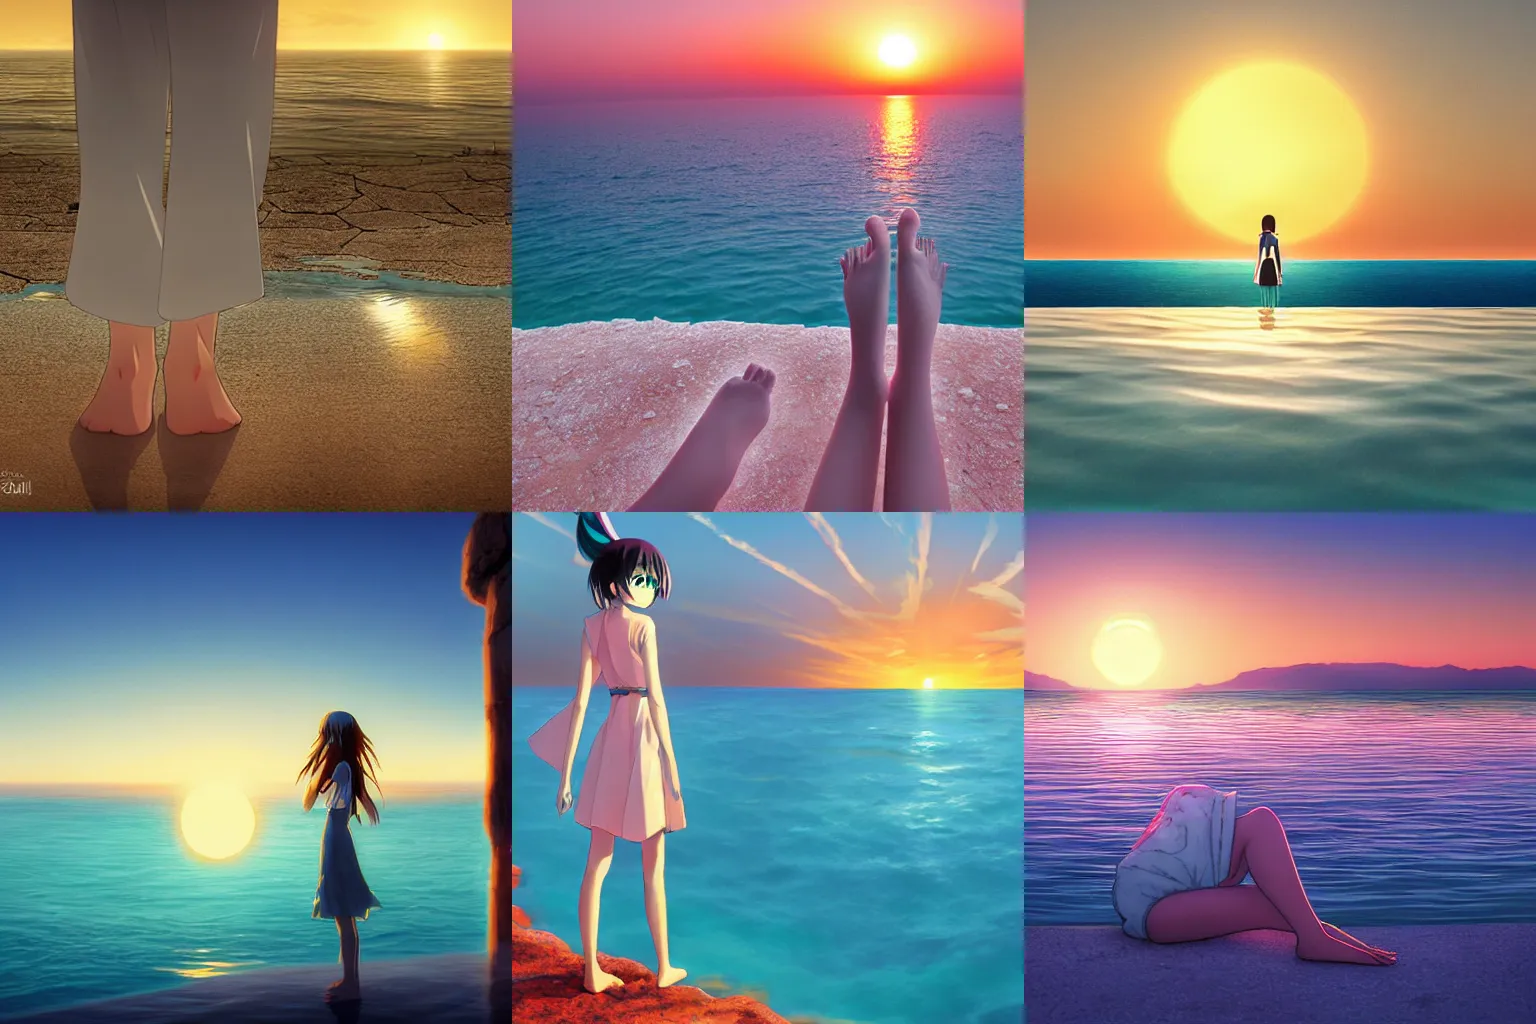 Prompt: Hatsune Miku stands bare foot in the Dead Sea with the sun setting, anime, by Makoto Shinkai, landscape, Dead Sea, setting sun